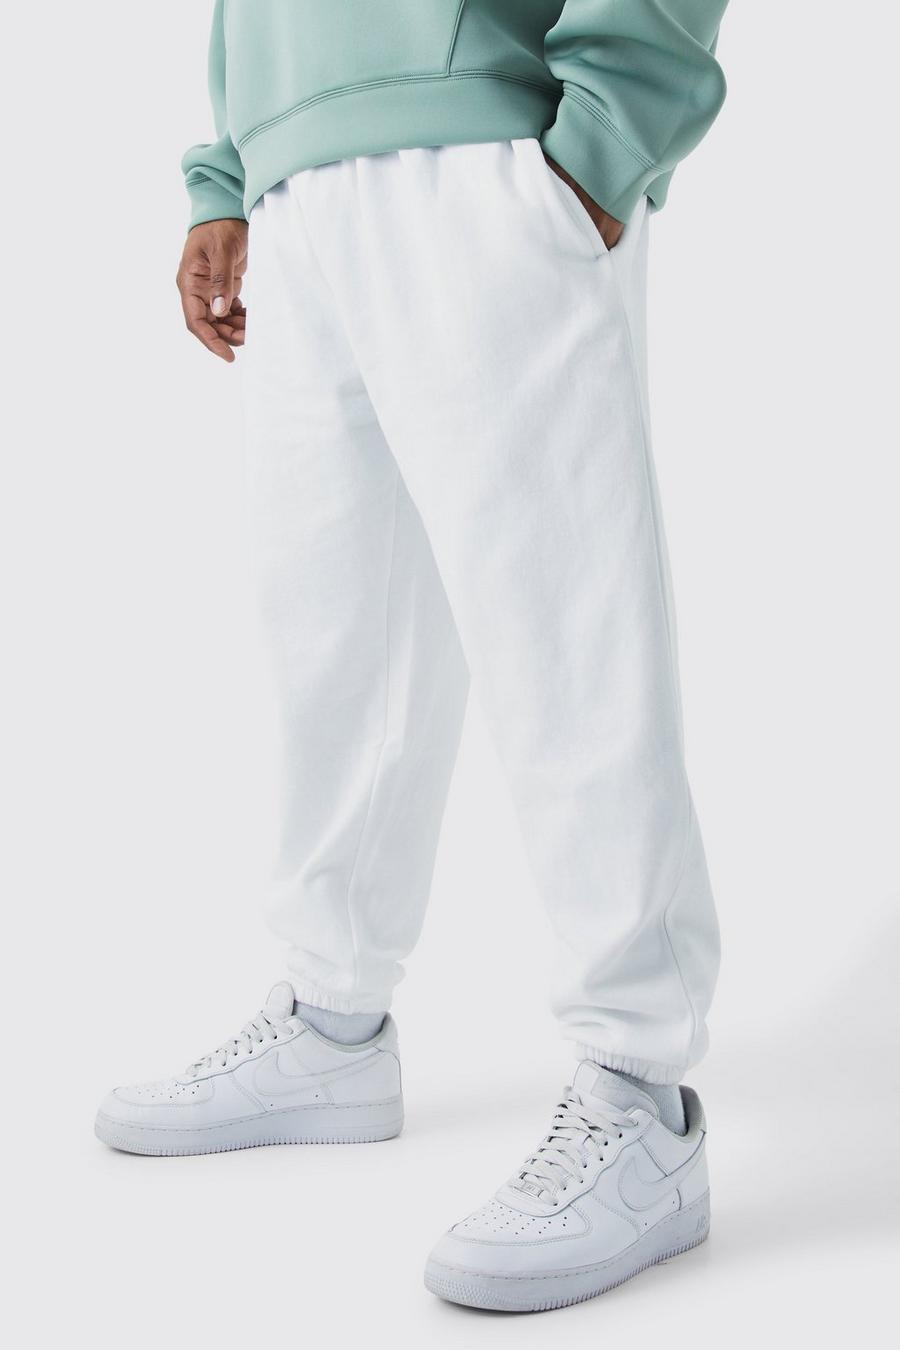 Pantalón deportivo Plus básico, White